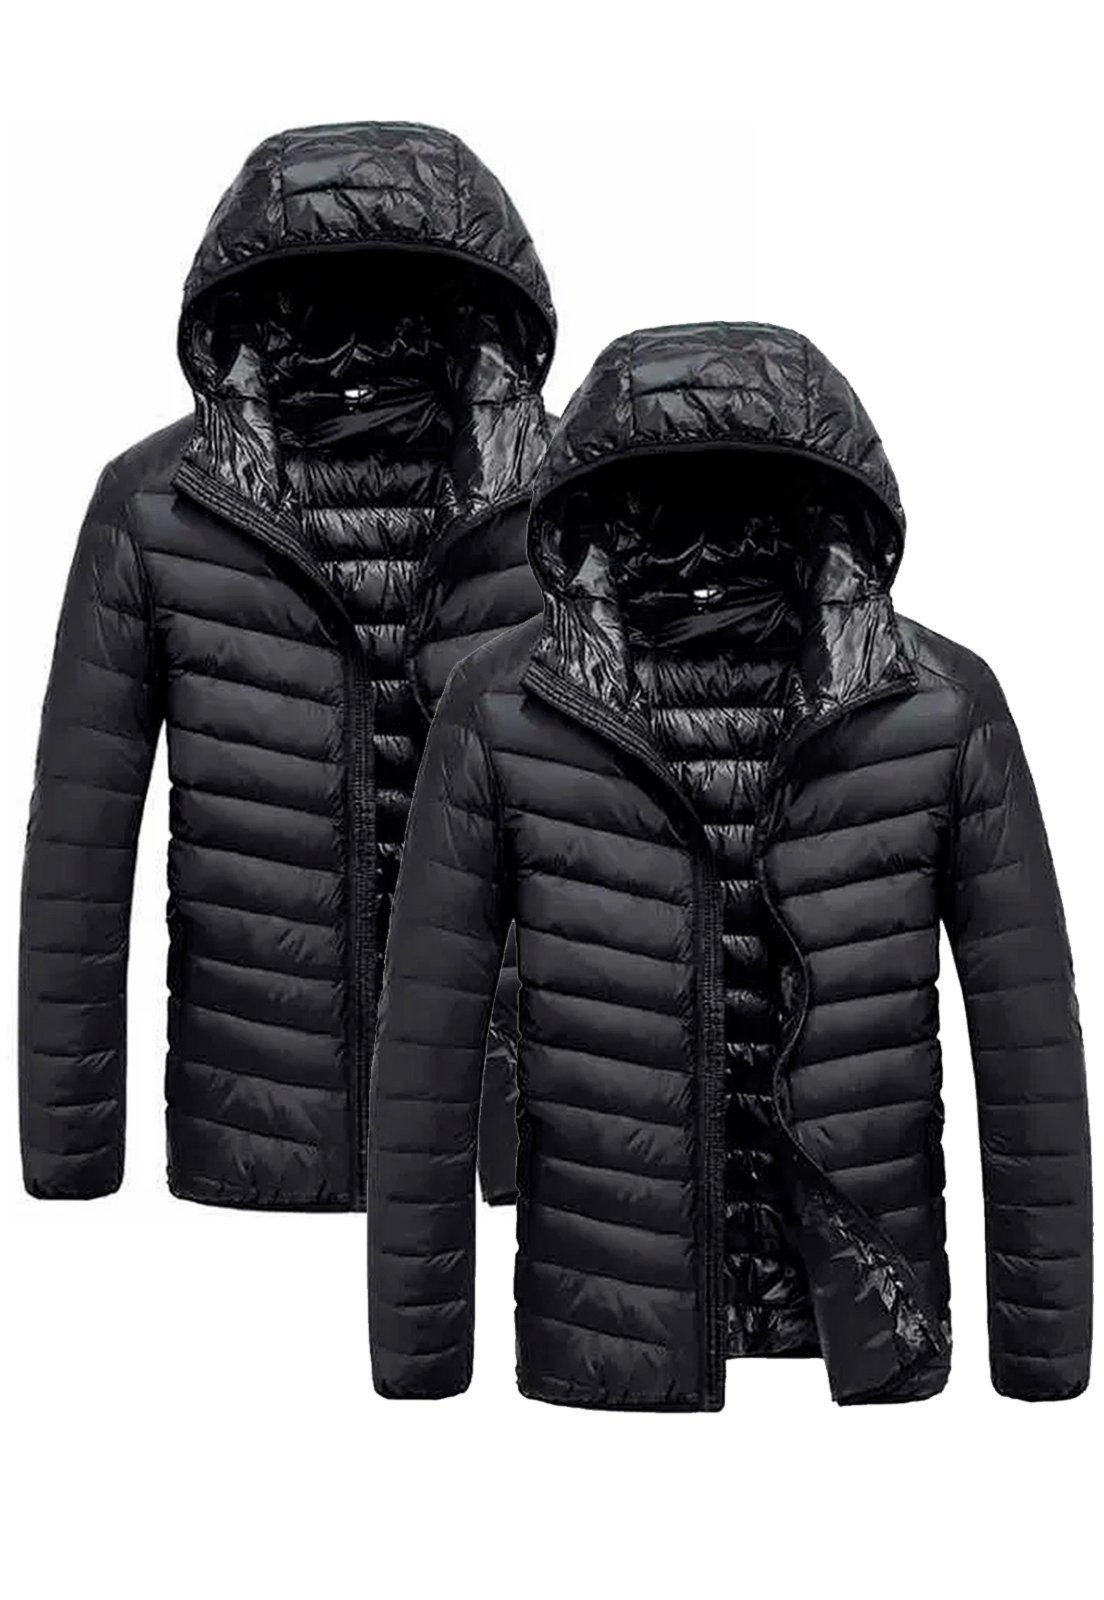 Casacos feminino inverno Kit 3 jaquetas avulsas femininas infantil